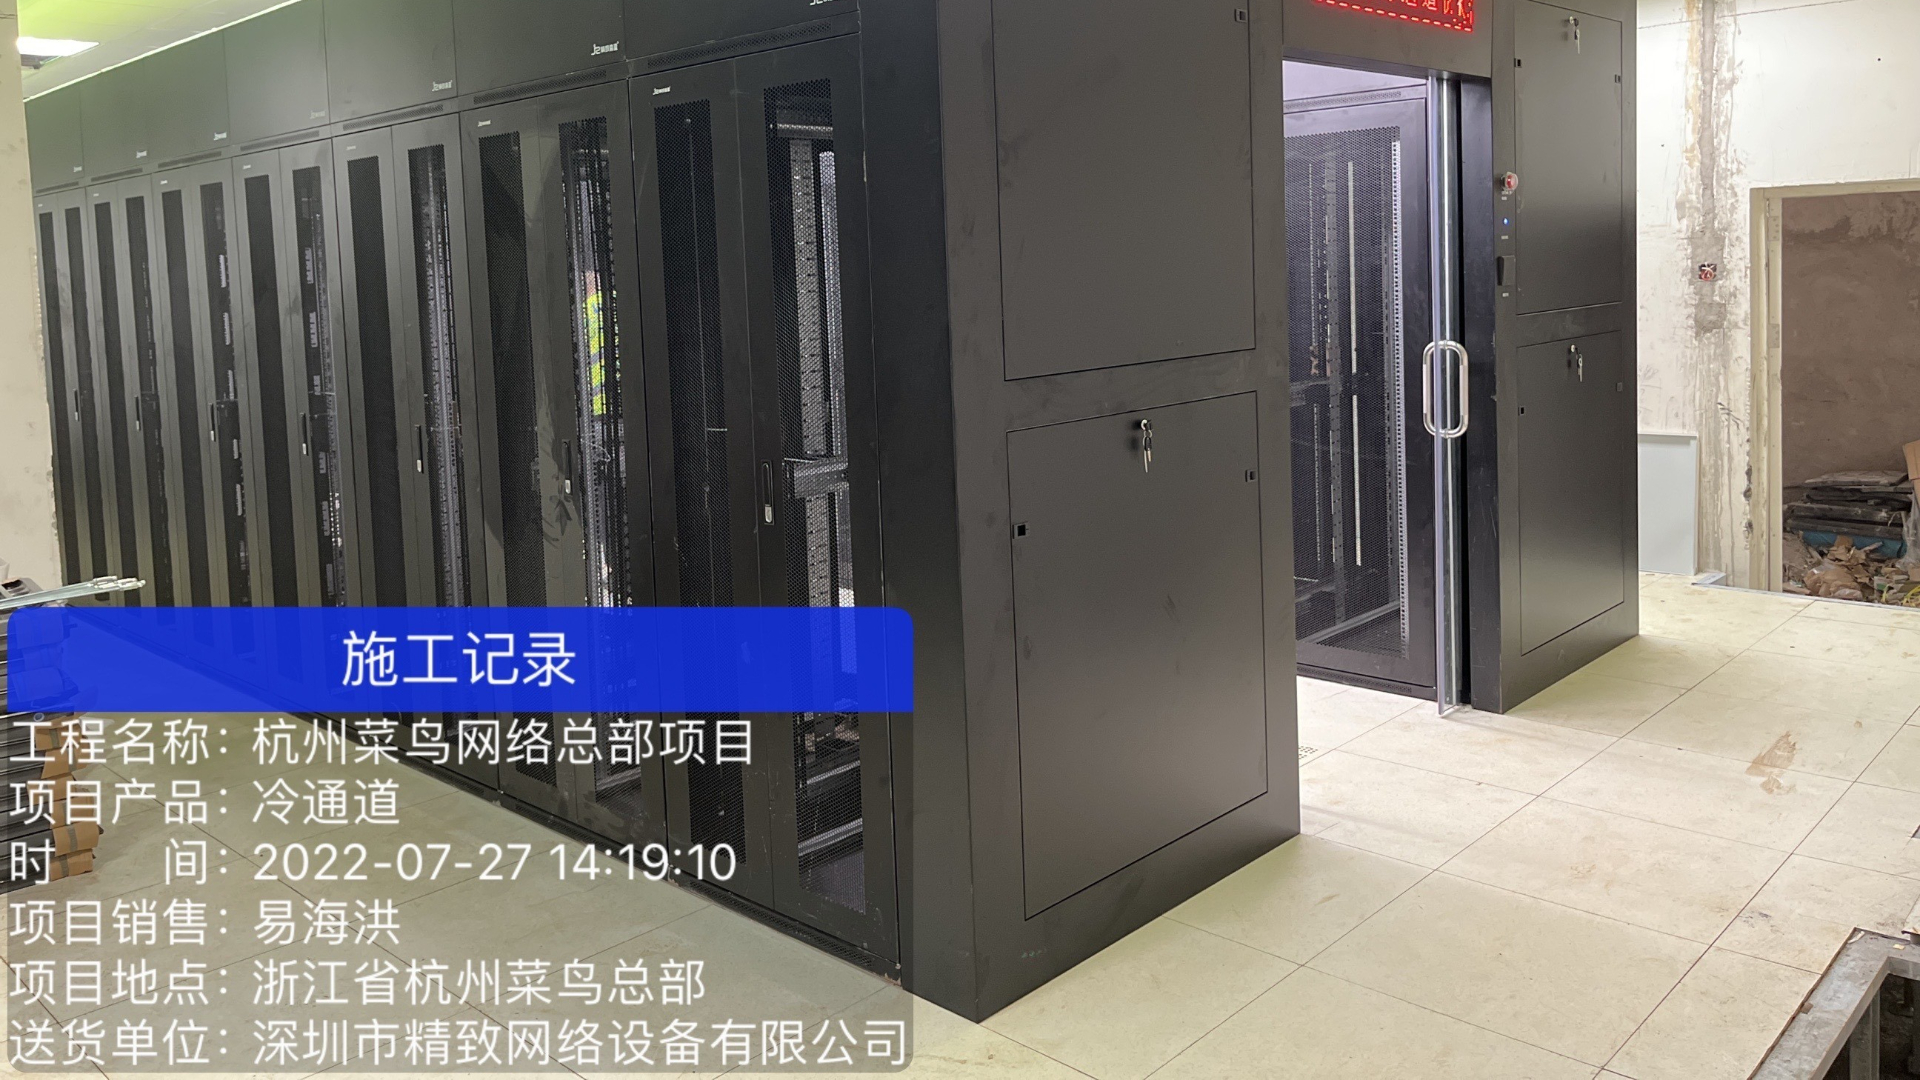 精致机柜为杭州阿里巴巴菜鸟网络总目项目二期冷通道机房完成安装调试